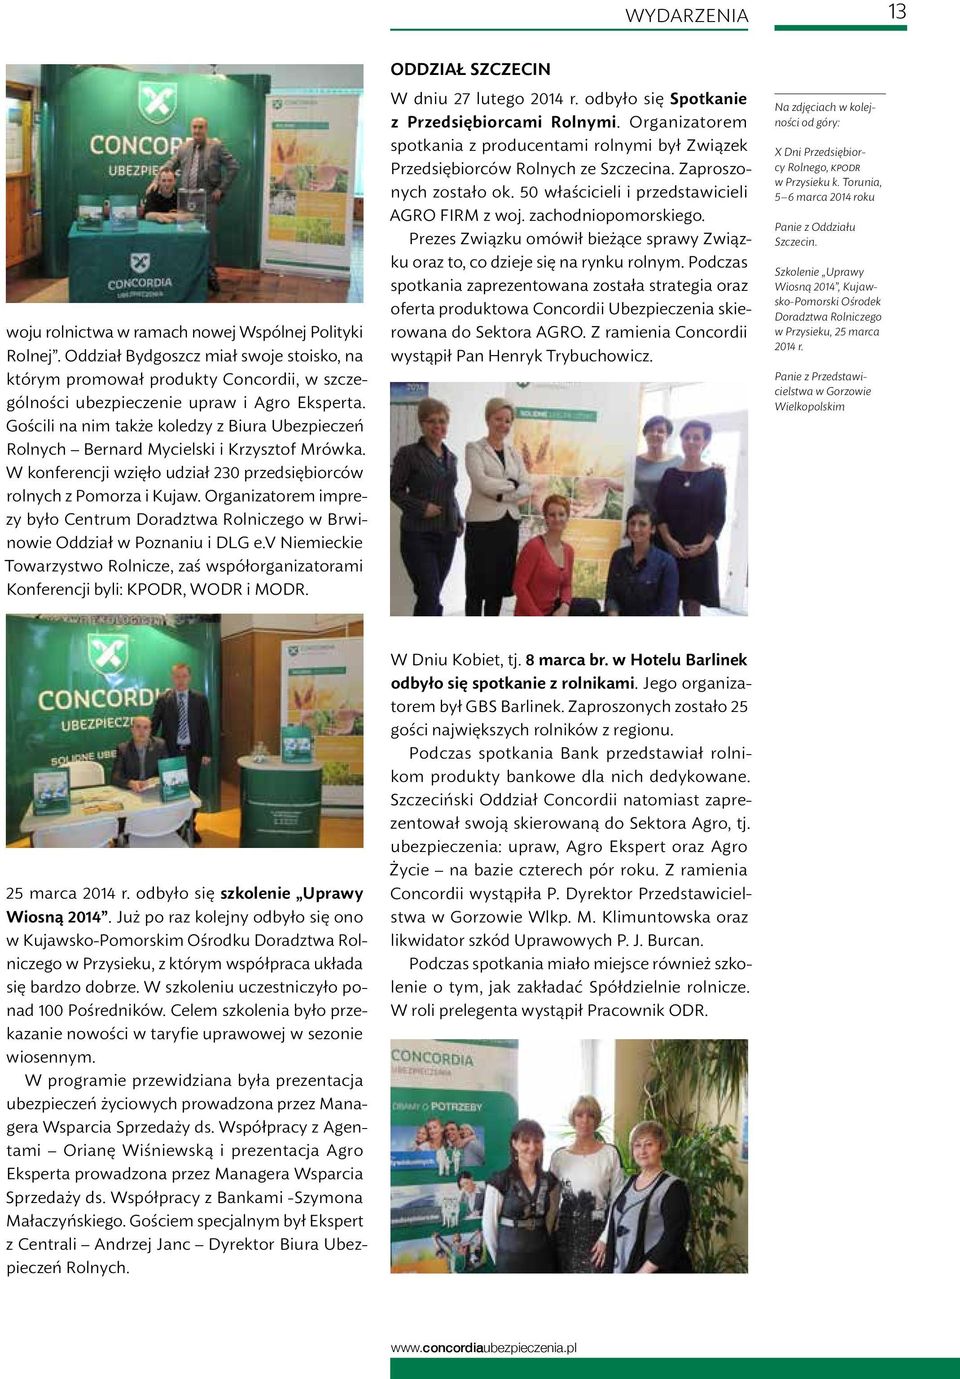 Organizatorem imprezy było Centrum Doradztwa Rolniczego w Brwinowie Oddział w Poznaniu i DLG e.v Niemieckie Towarzystwo Rolnicze, zaś współorganizatorami Konferencji byli: KPODR, WODR i MODR.